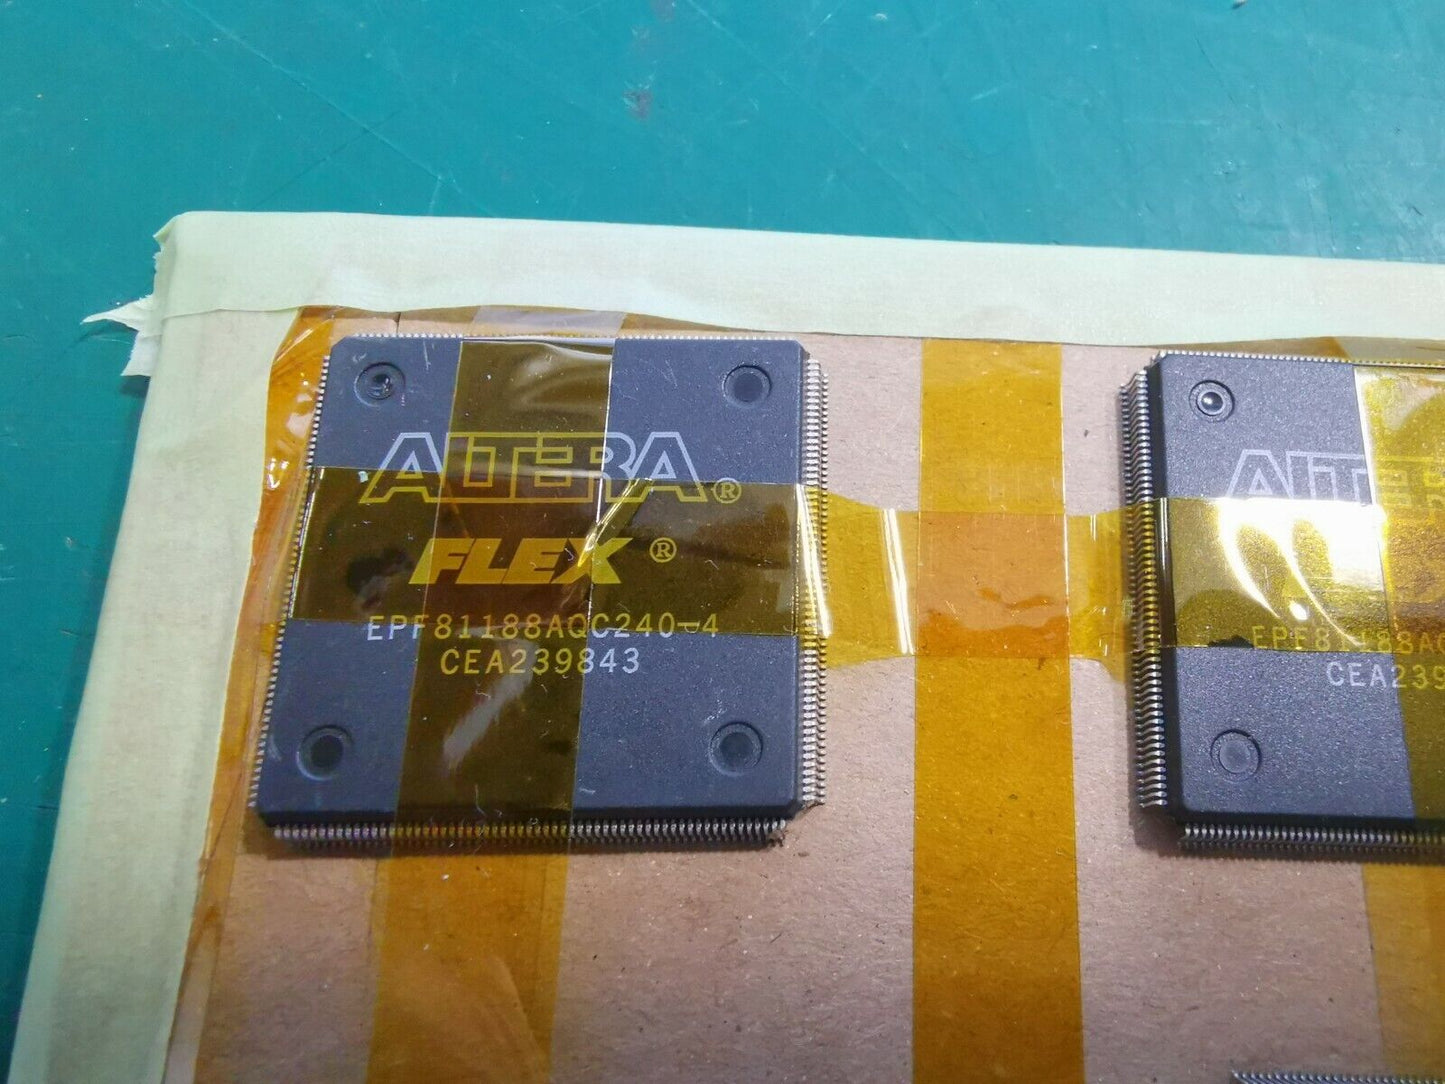 8pcs Altera Flex EPF81188AQC240-4 FPGA IC